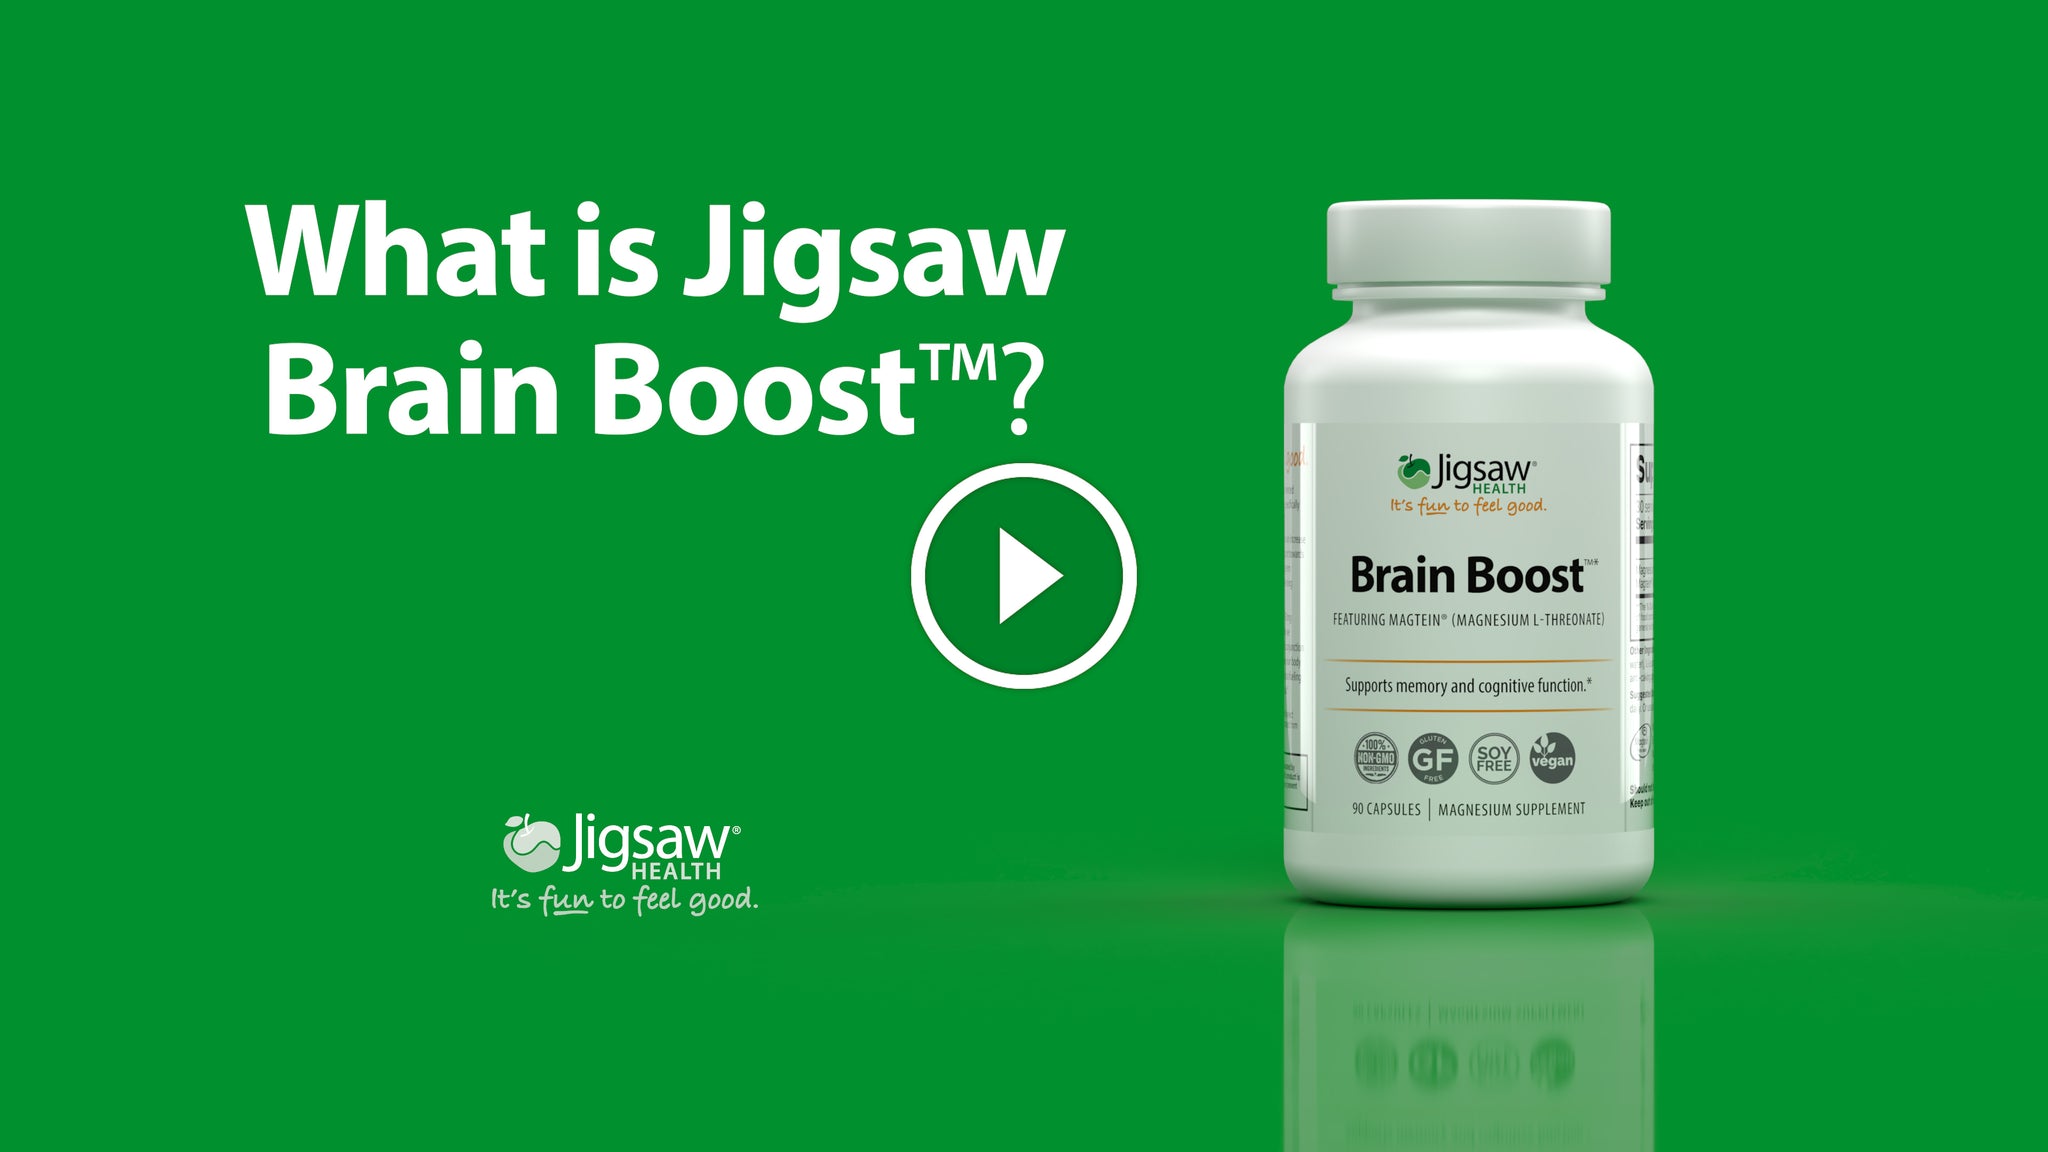 What is Jigsaw Brain Boost?